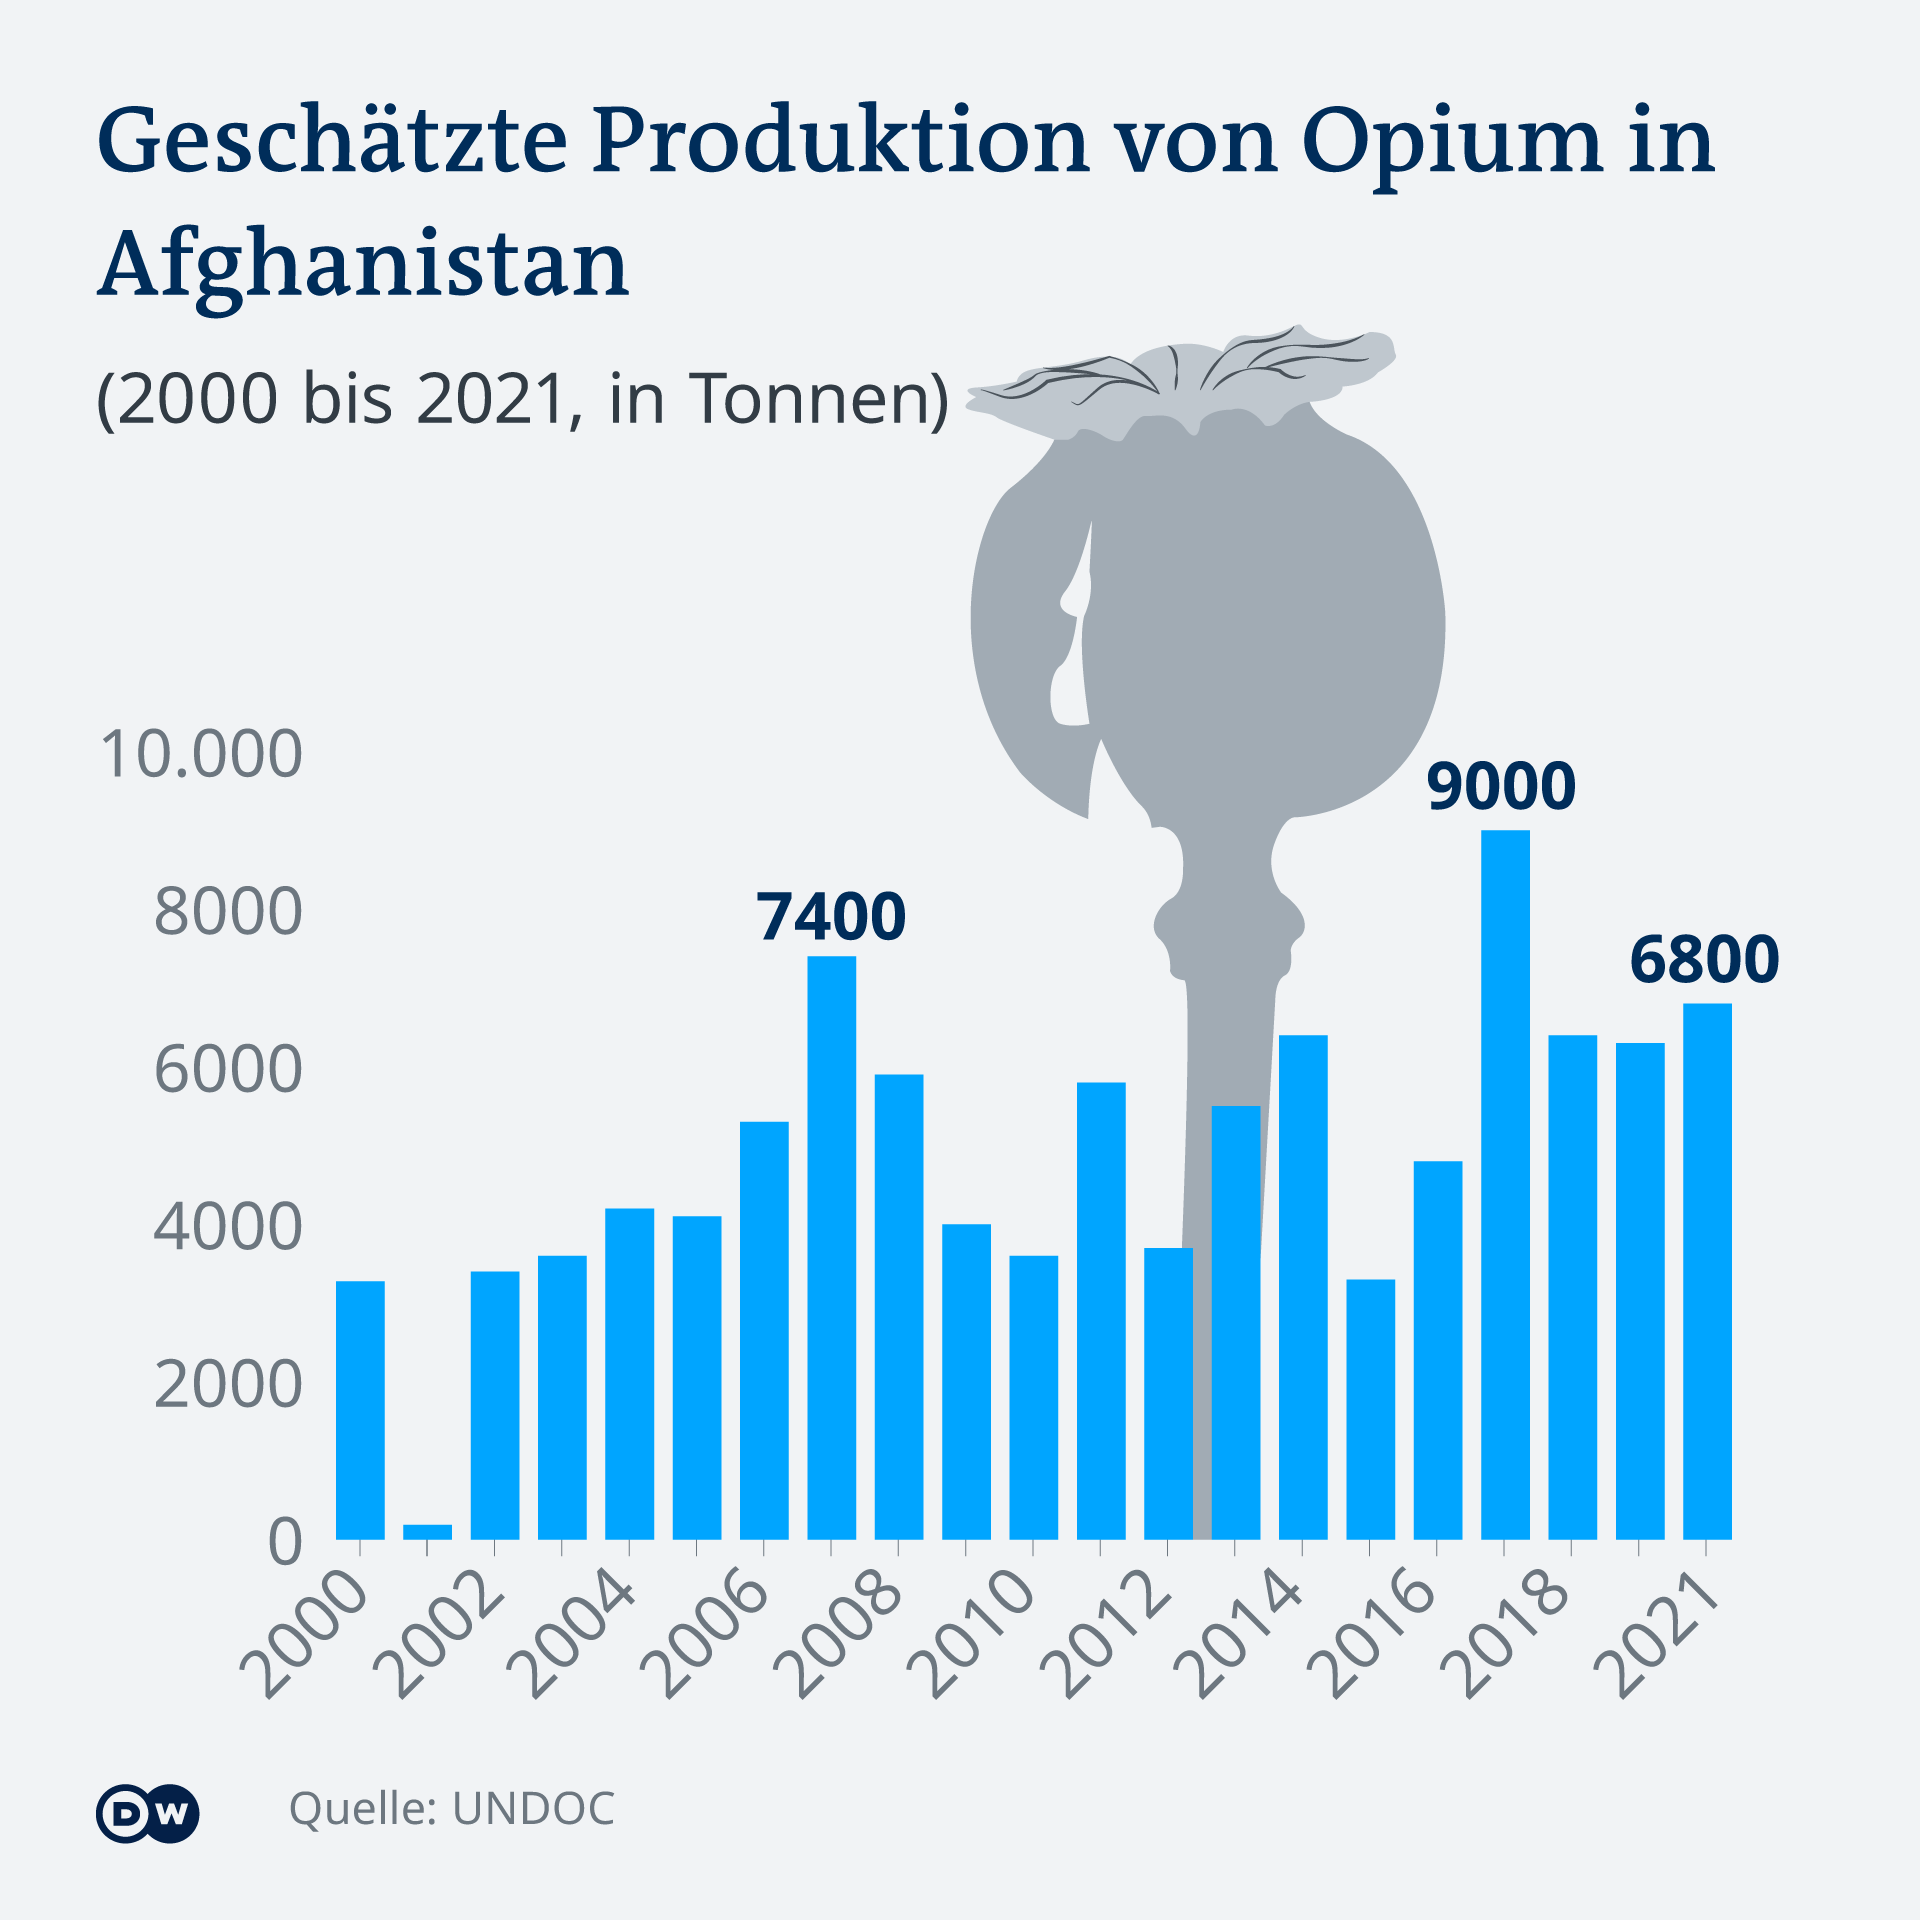 Proizvodnja opijuma u Afganistanu od 2000. do 2021. (u tonama)